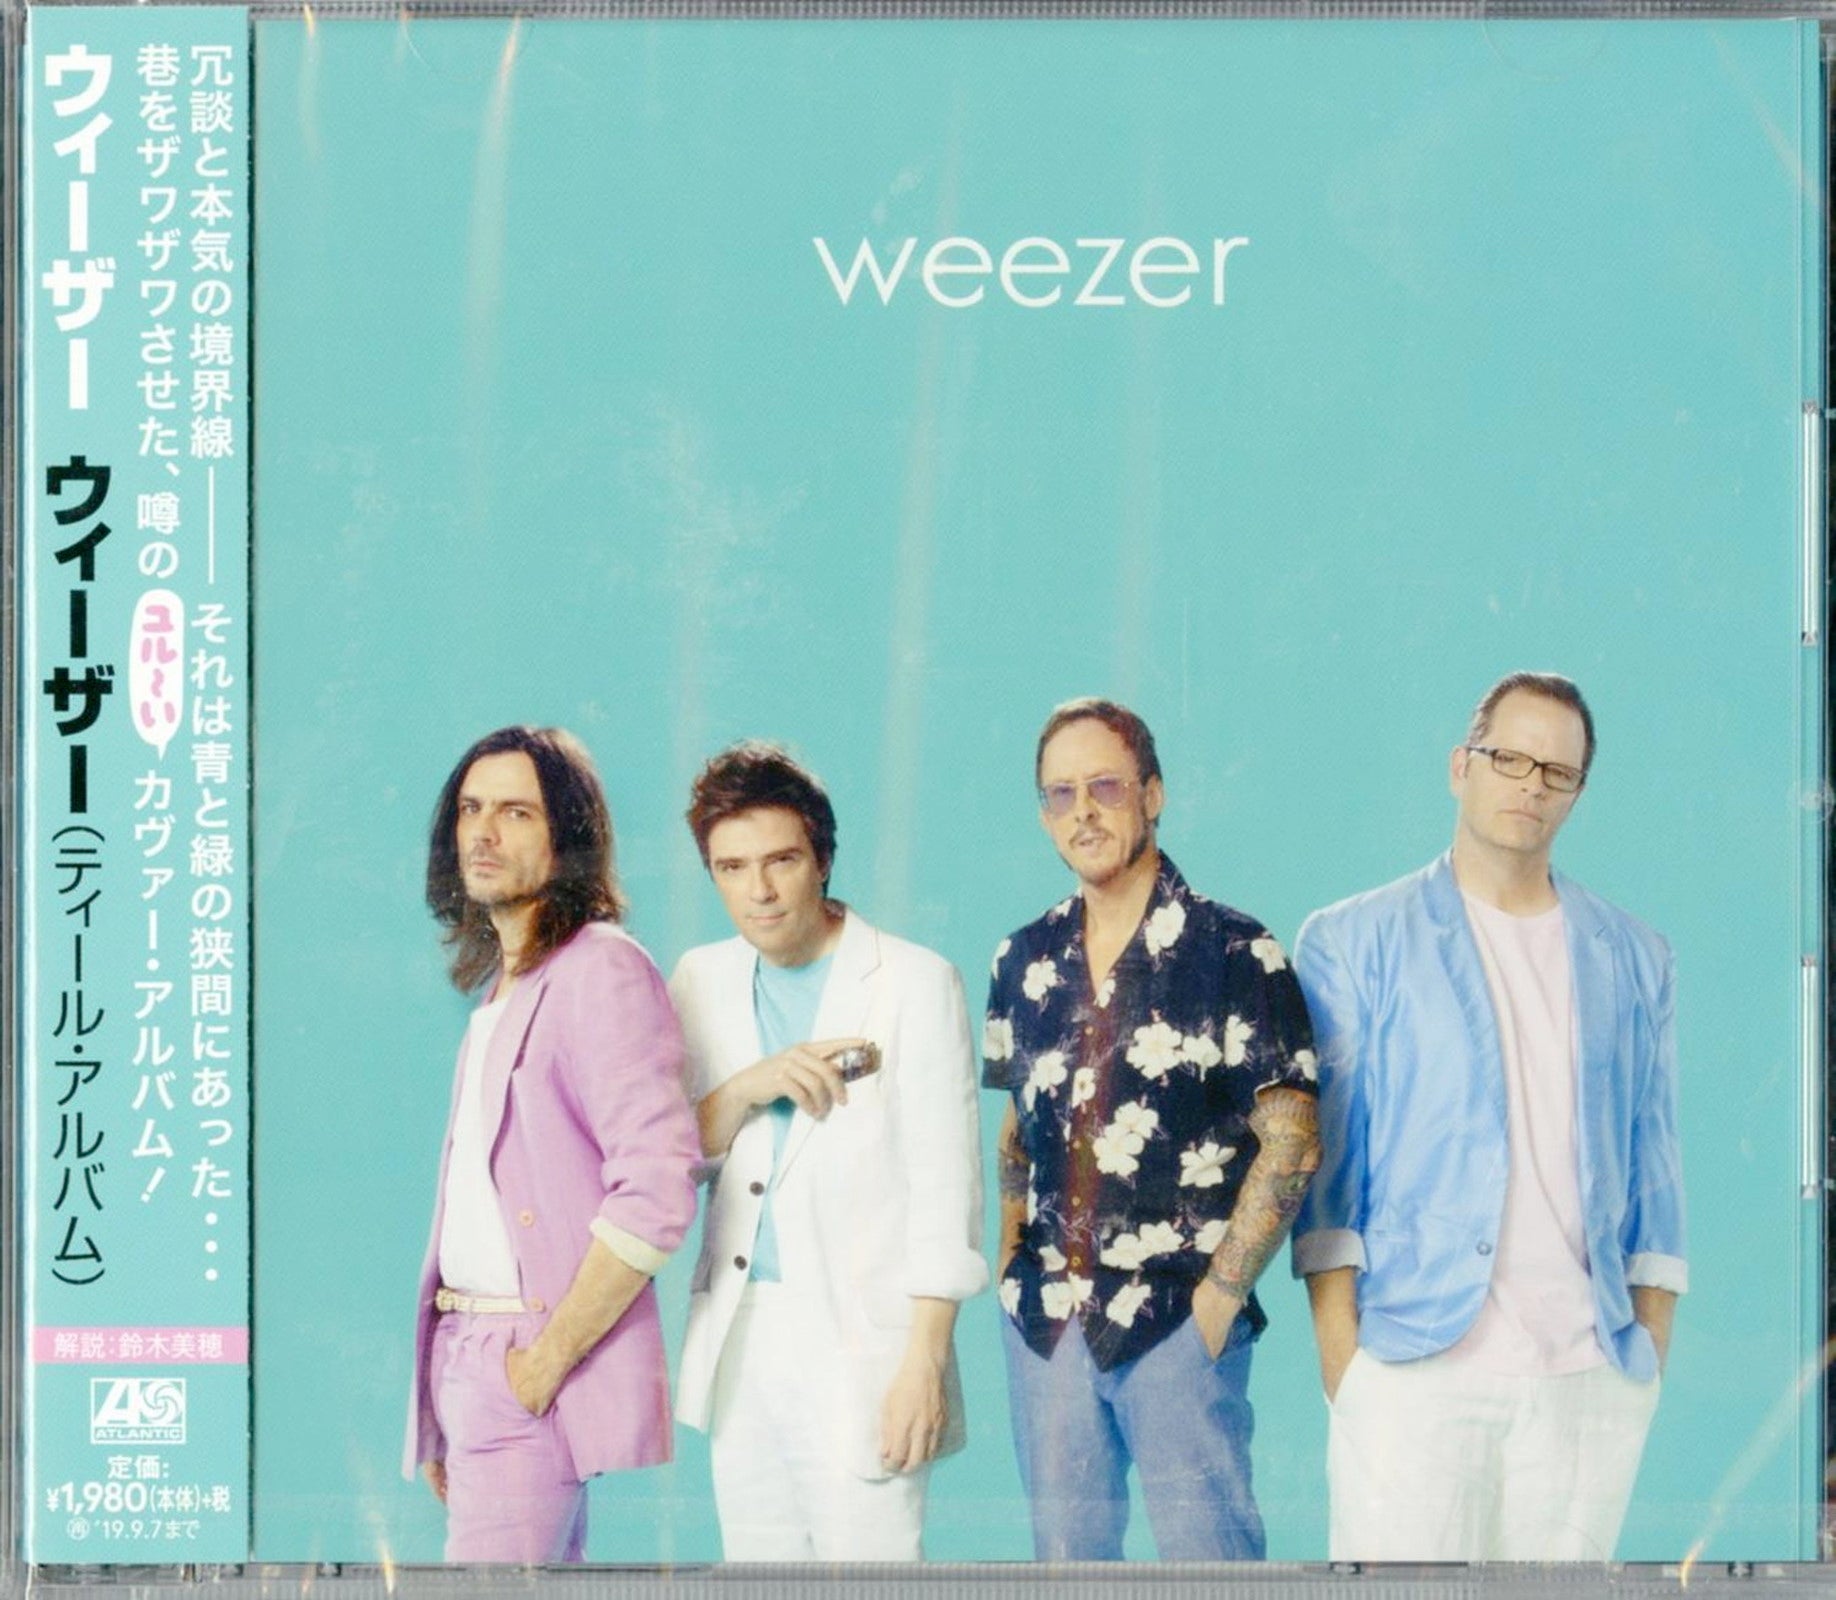 Weezer - S/T - Japan CD – CDs Vinyl Japan Store Alternative/Indie 